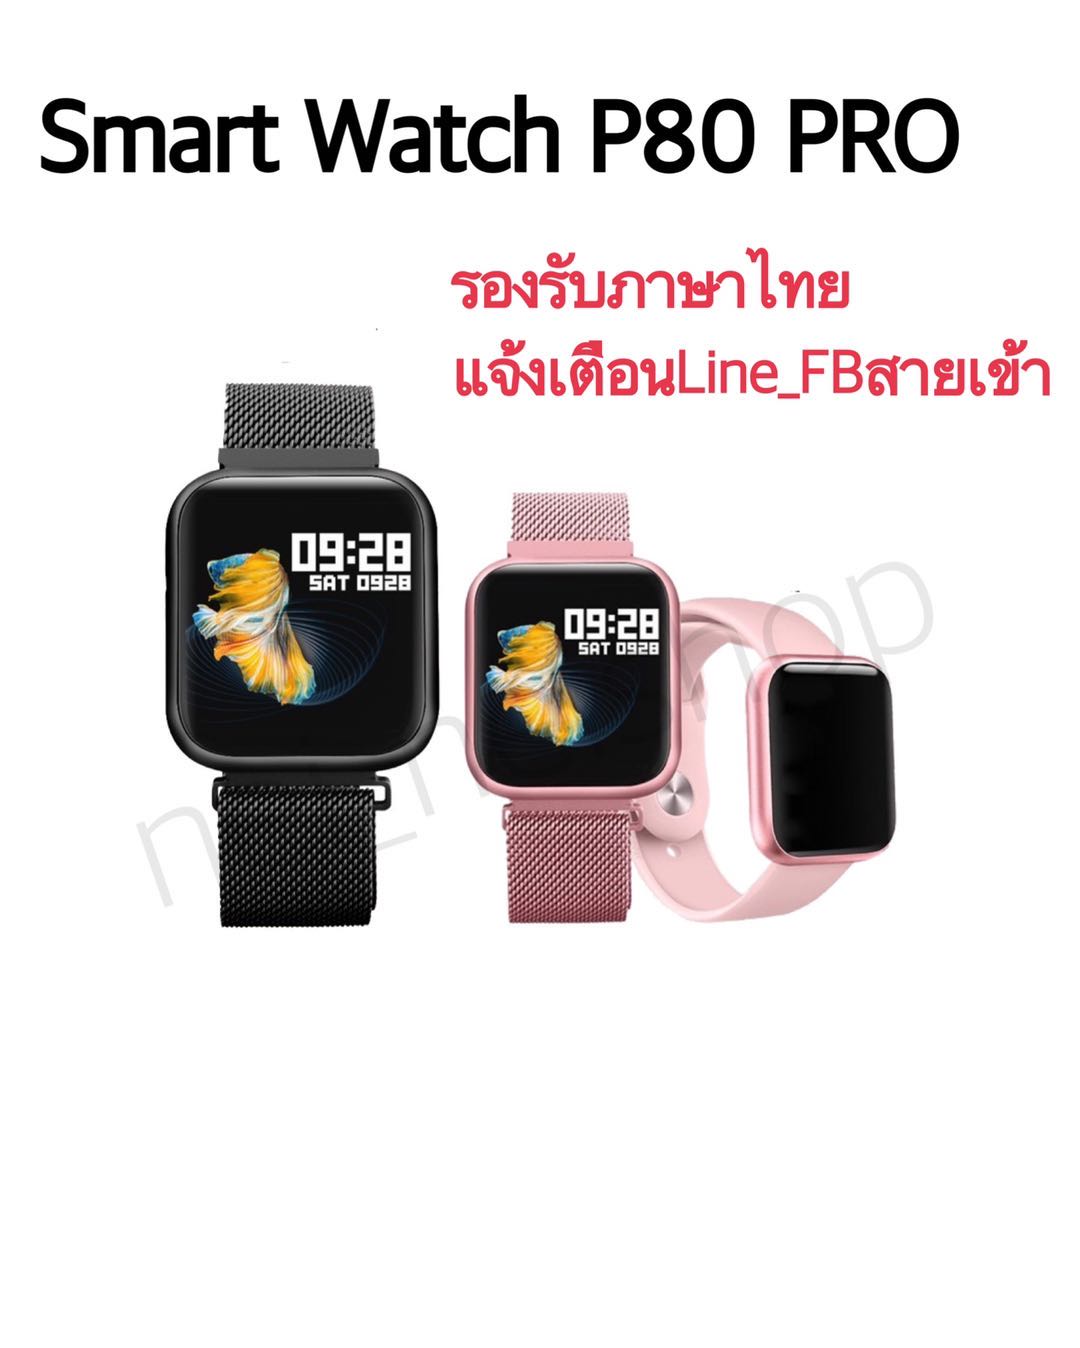 Smart Watch P80 Pro 2019 นาฬิกาอัจฉริยะสัมผัสได้เต็มจอ รองรับภาษาไทย เปลี่ยนรูปหน้าจอได้